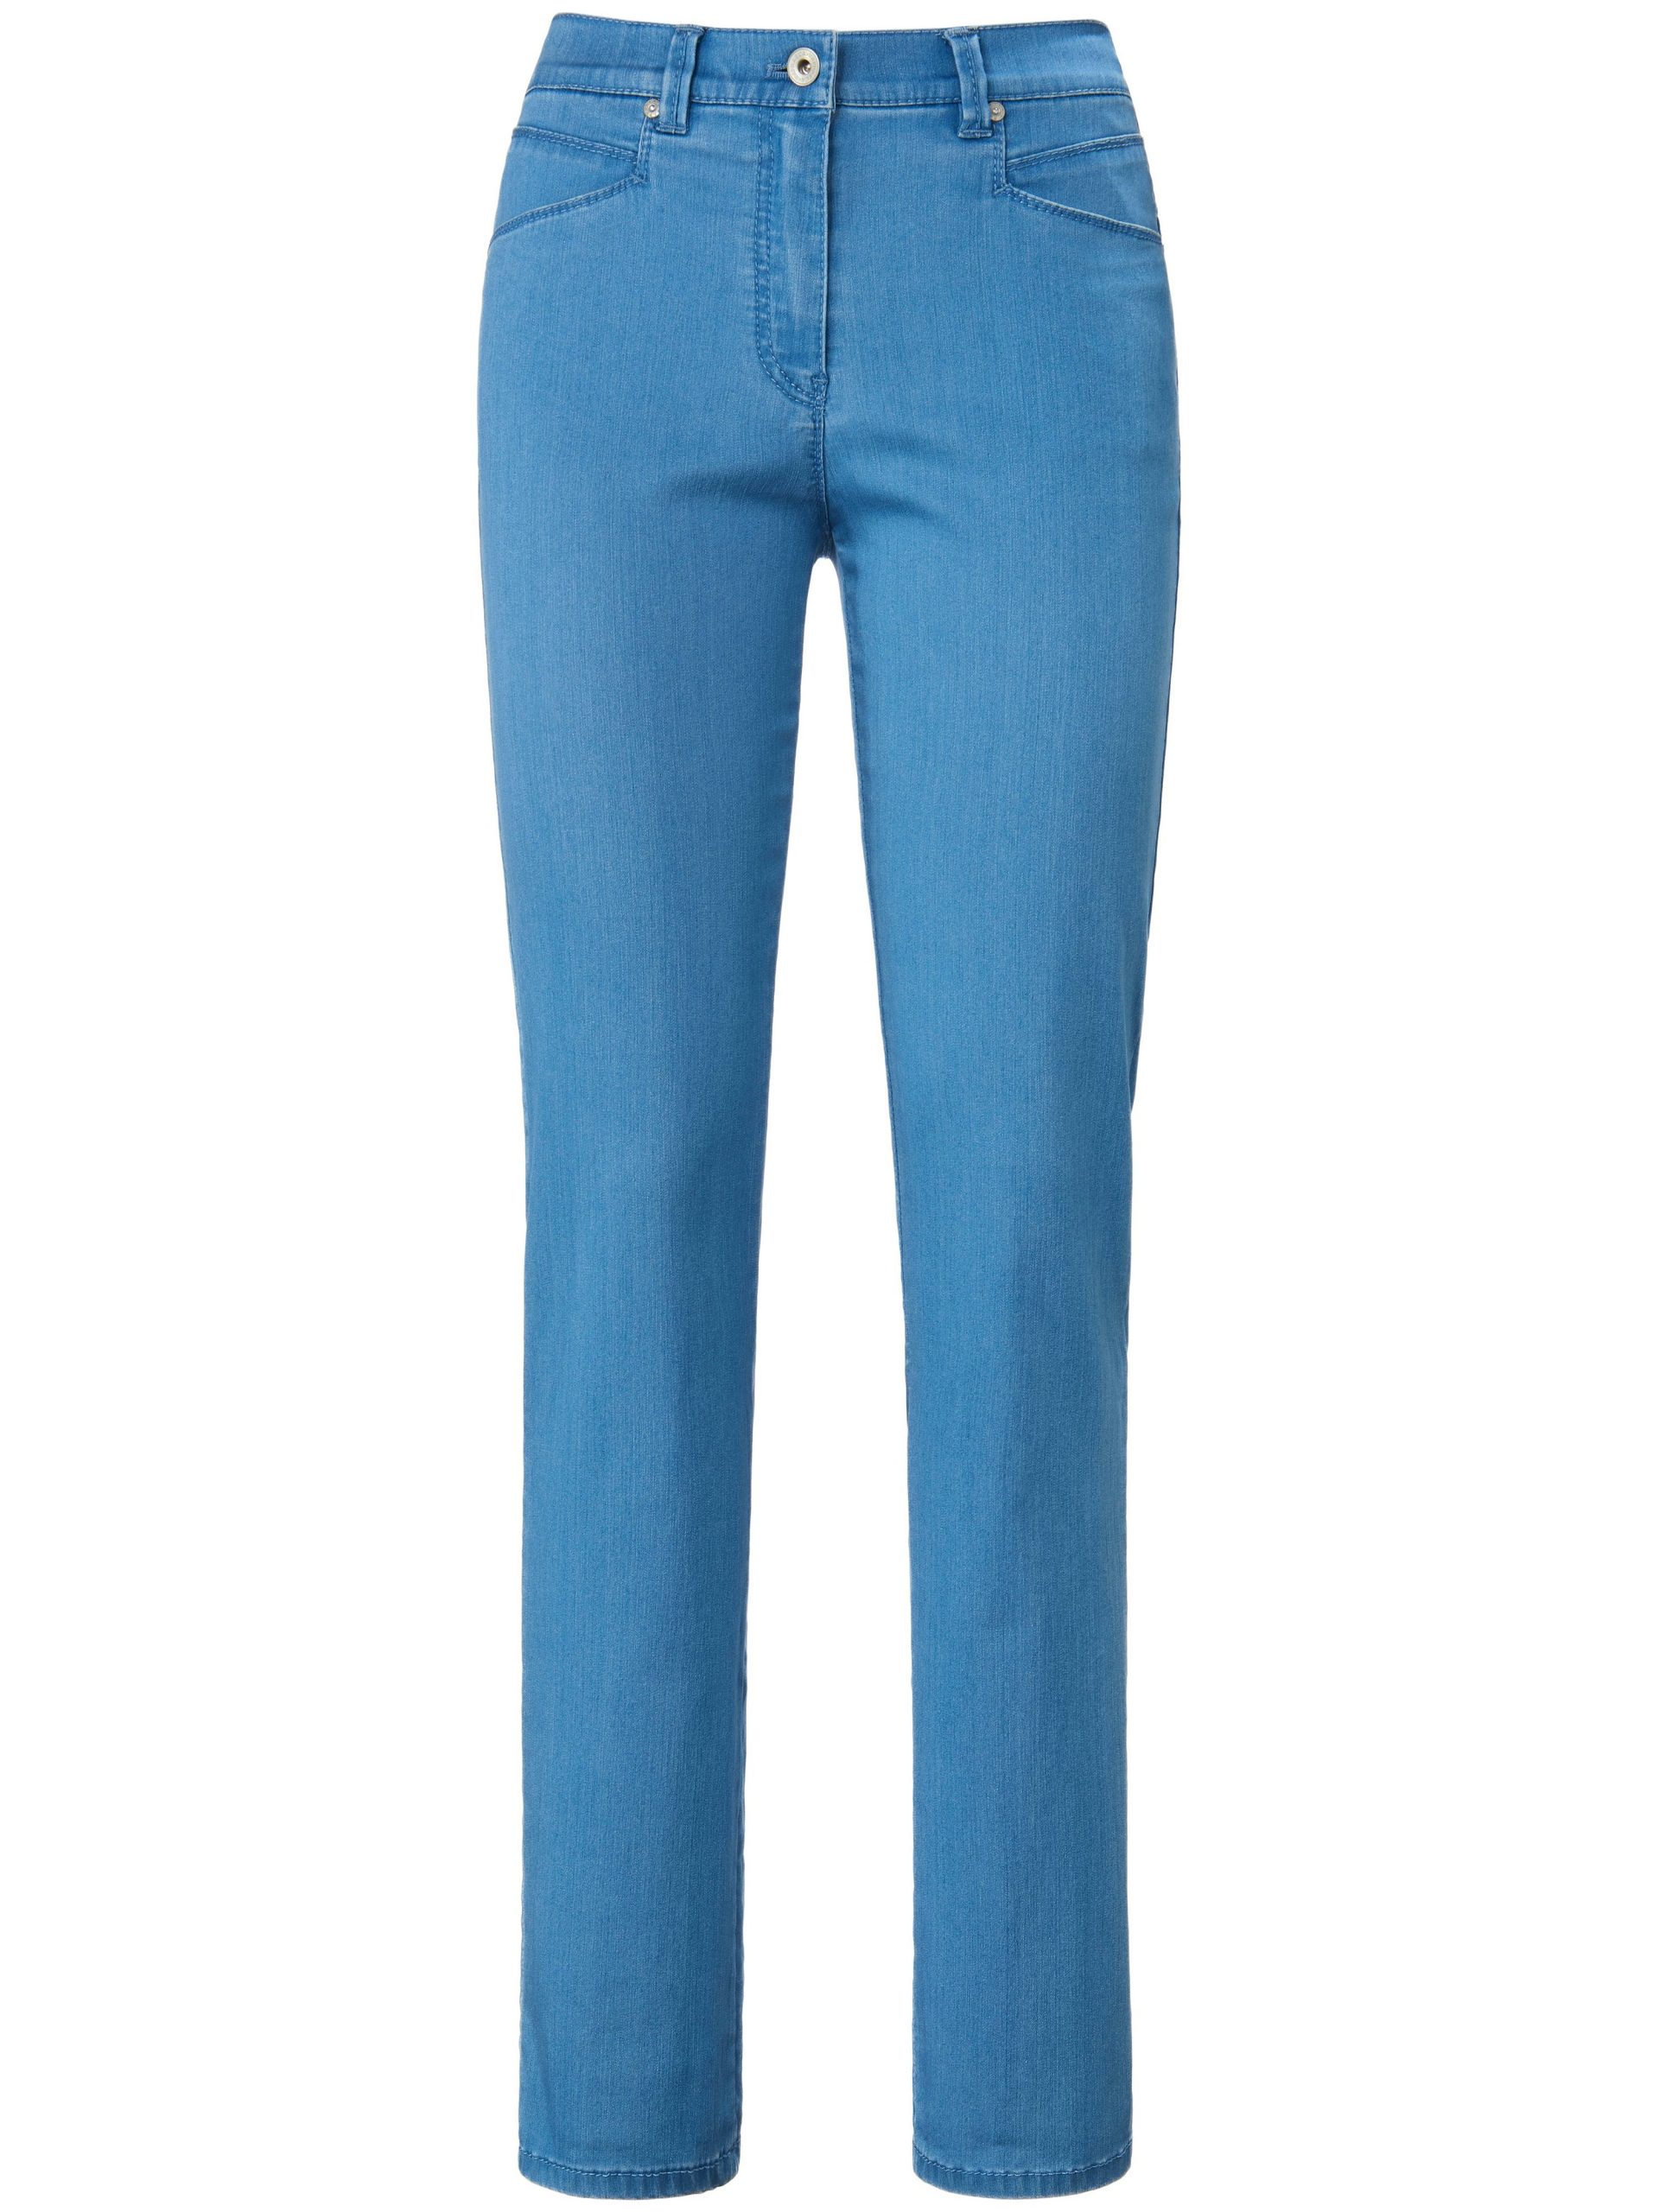 Comfort Plus jeans model Caren Van Raphaela by Brax denim